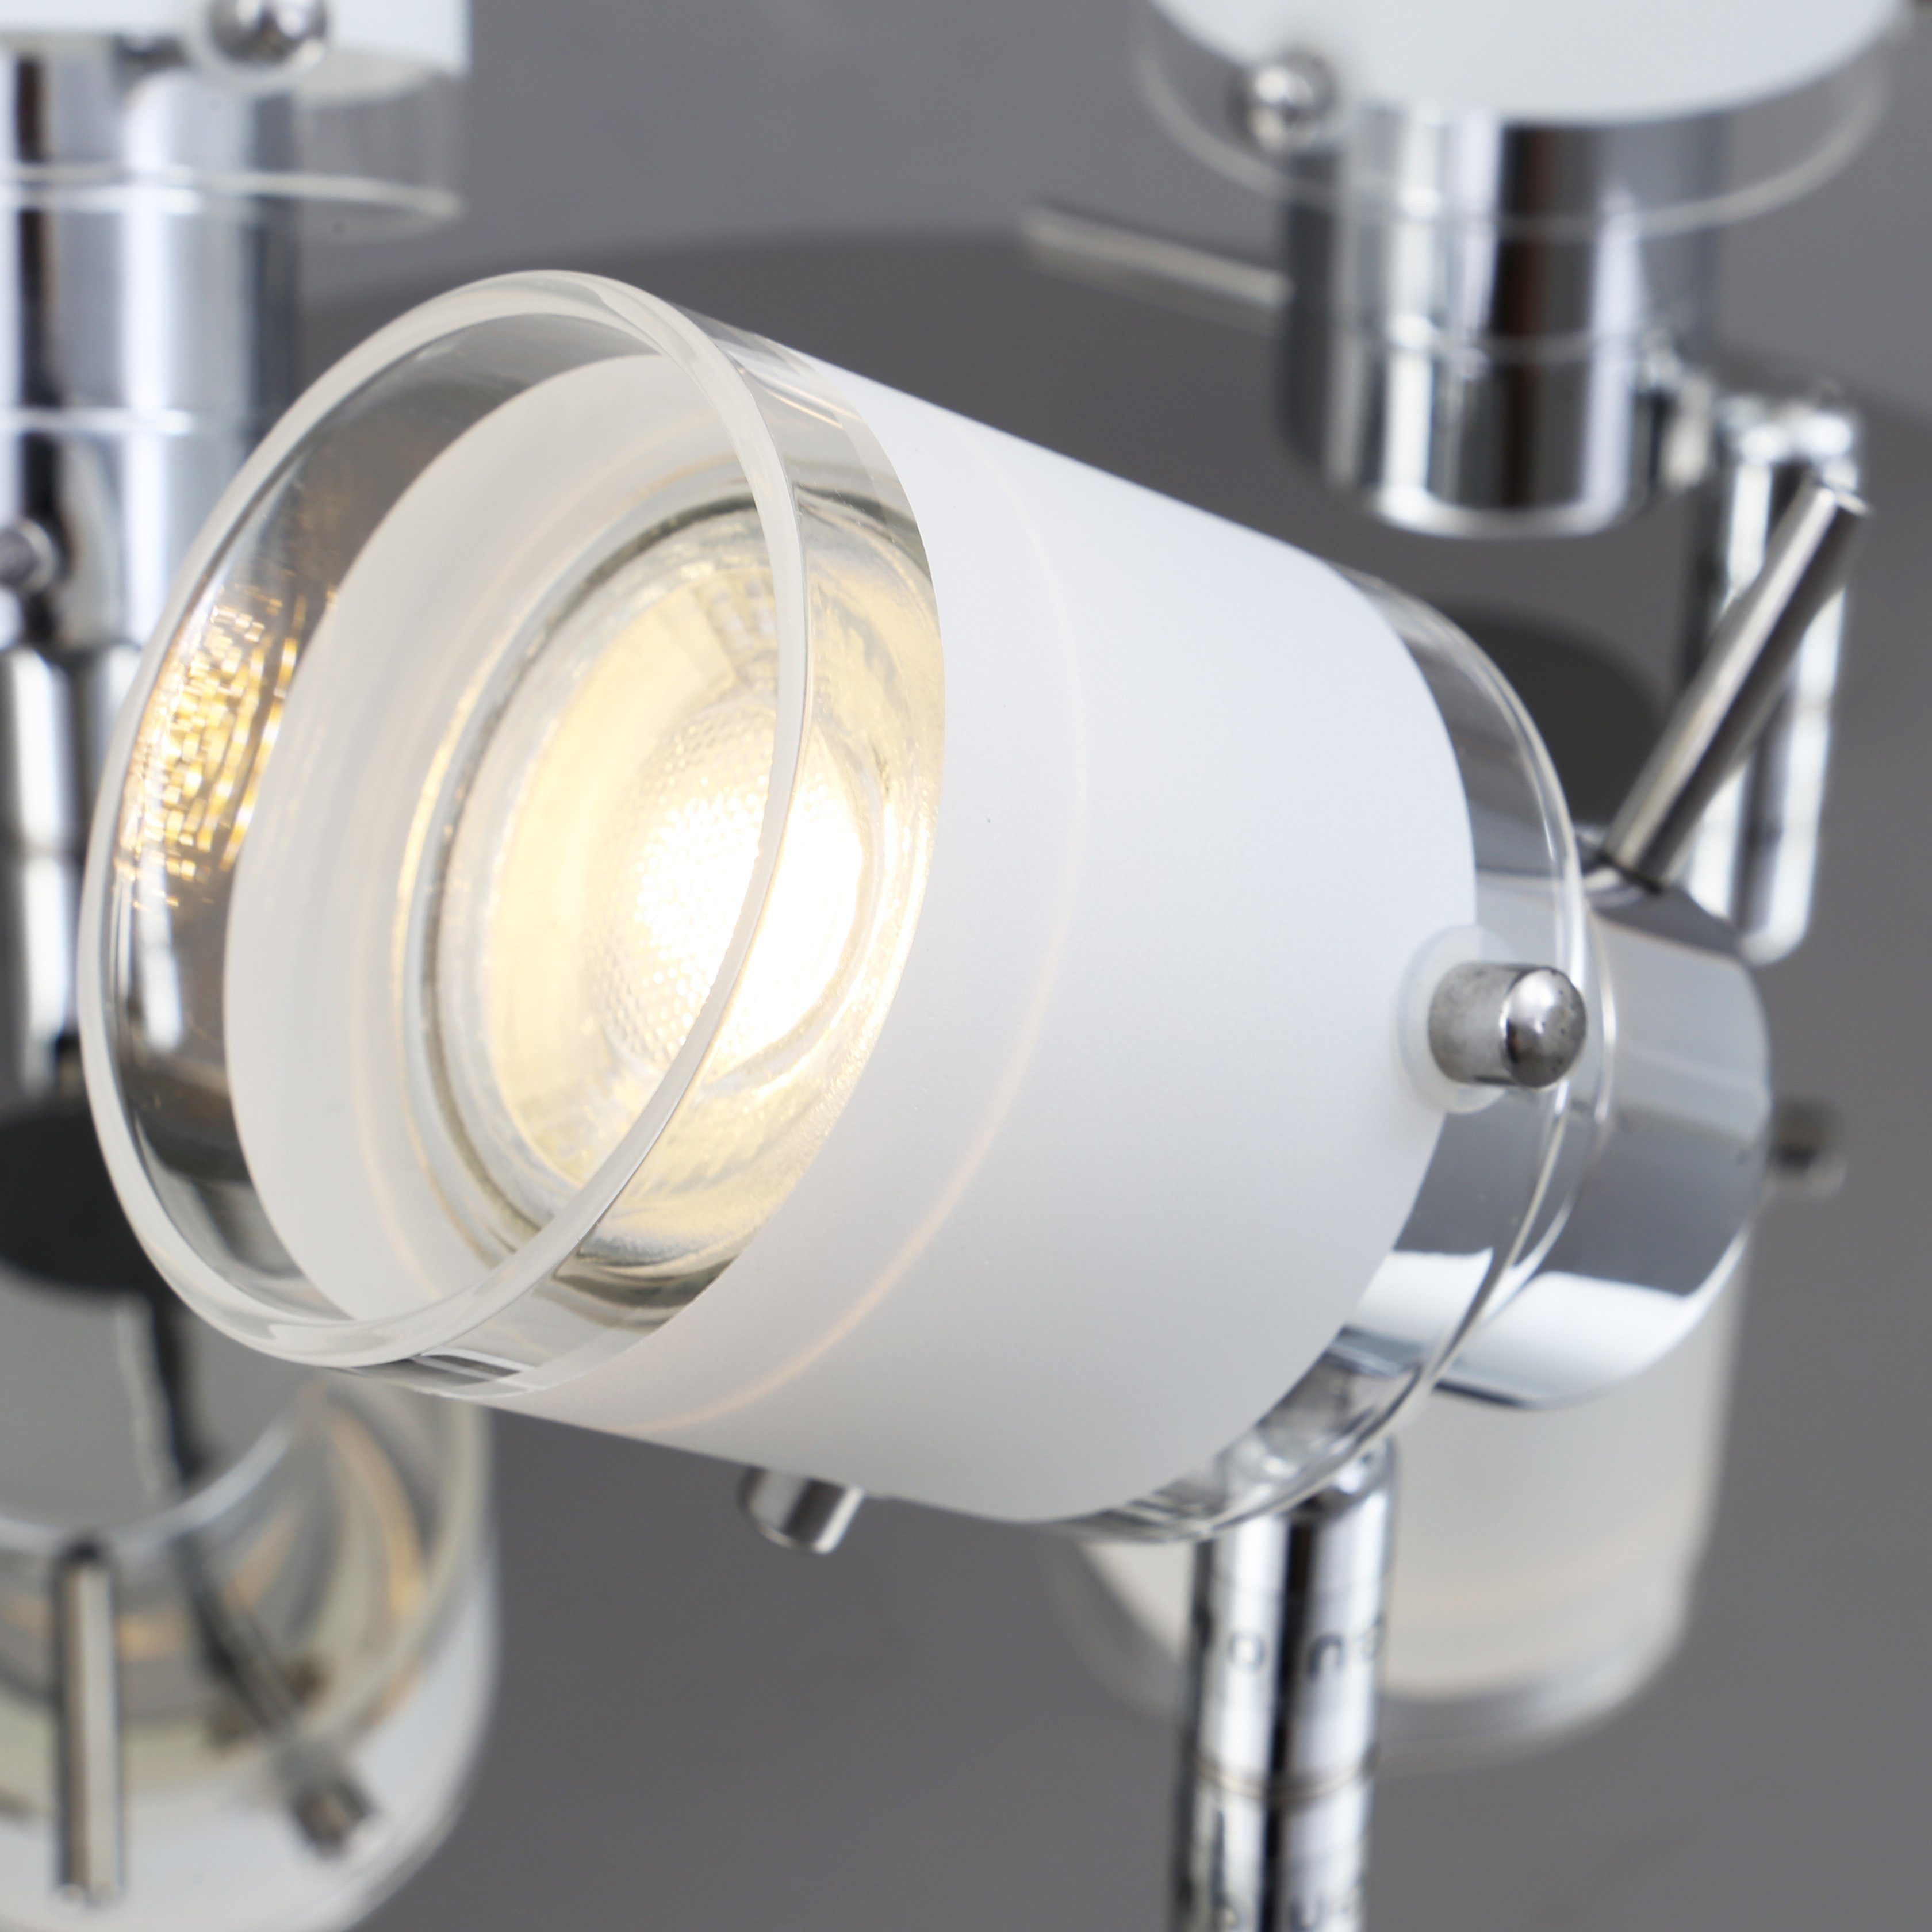 B.K.Licht LED Deckenleuchte, Warmweiß, Deckenlampe, IP44, Deckenstrahler, wechselbar, Badezimmer Bad, GU10, Leuchtmittel schwenkbar